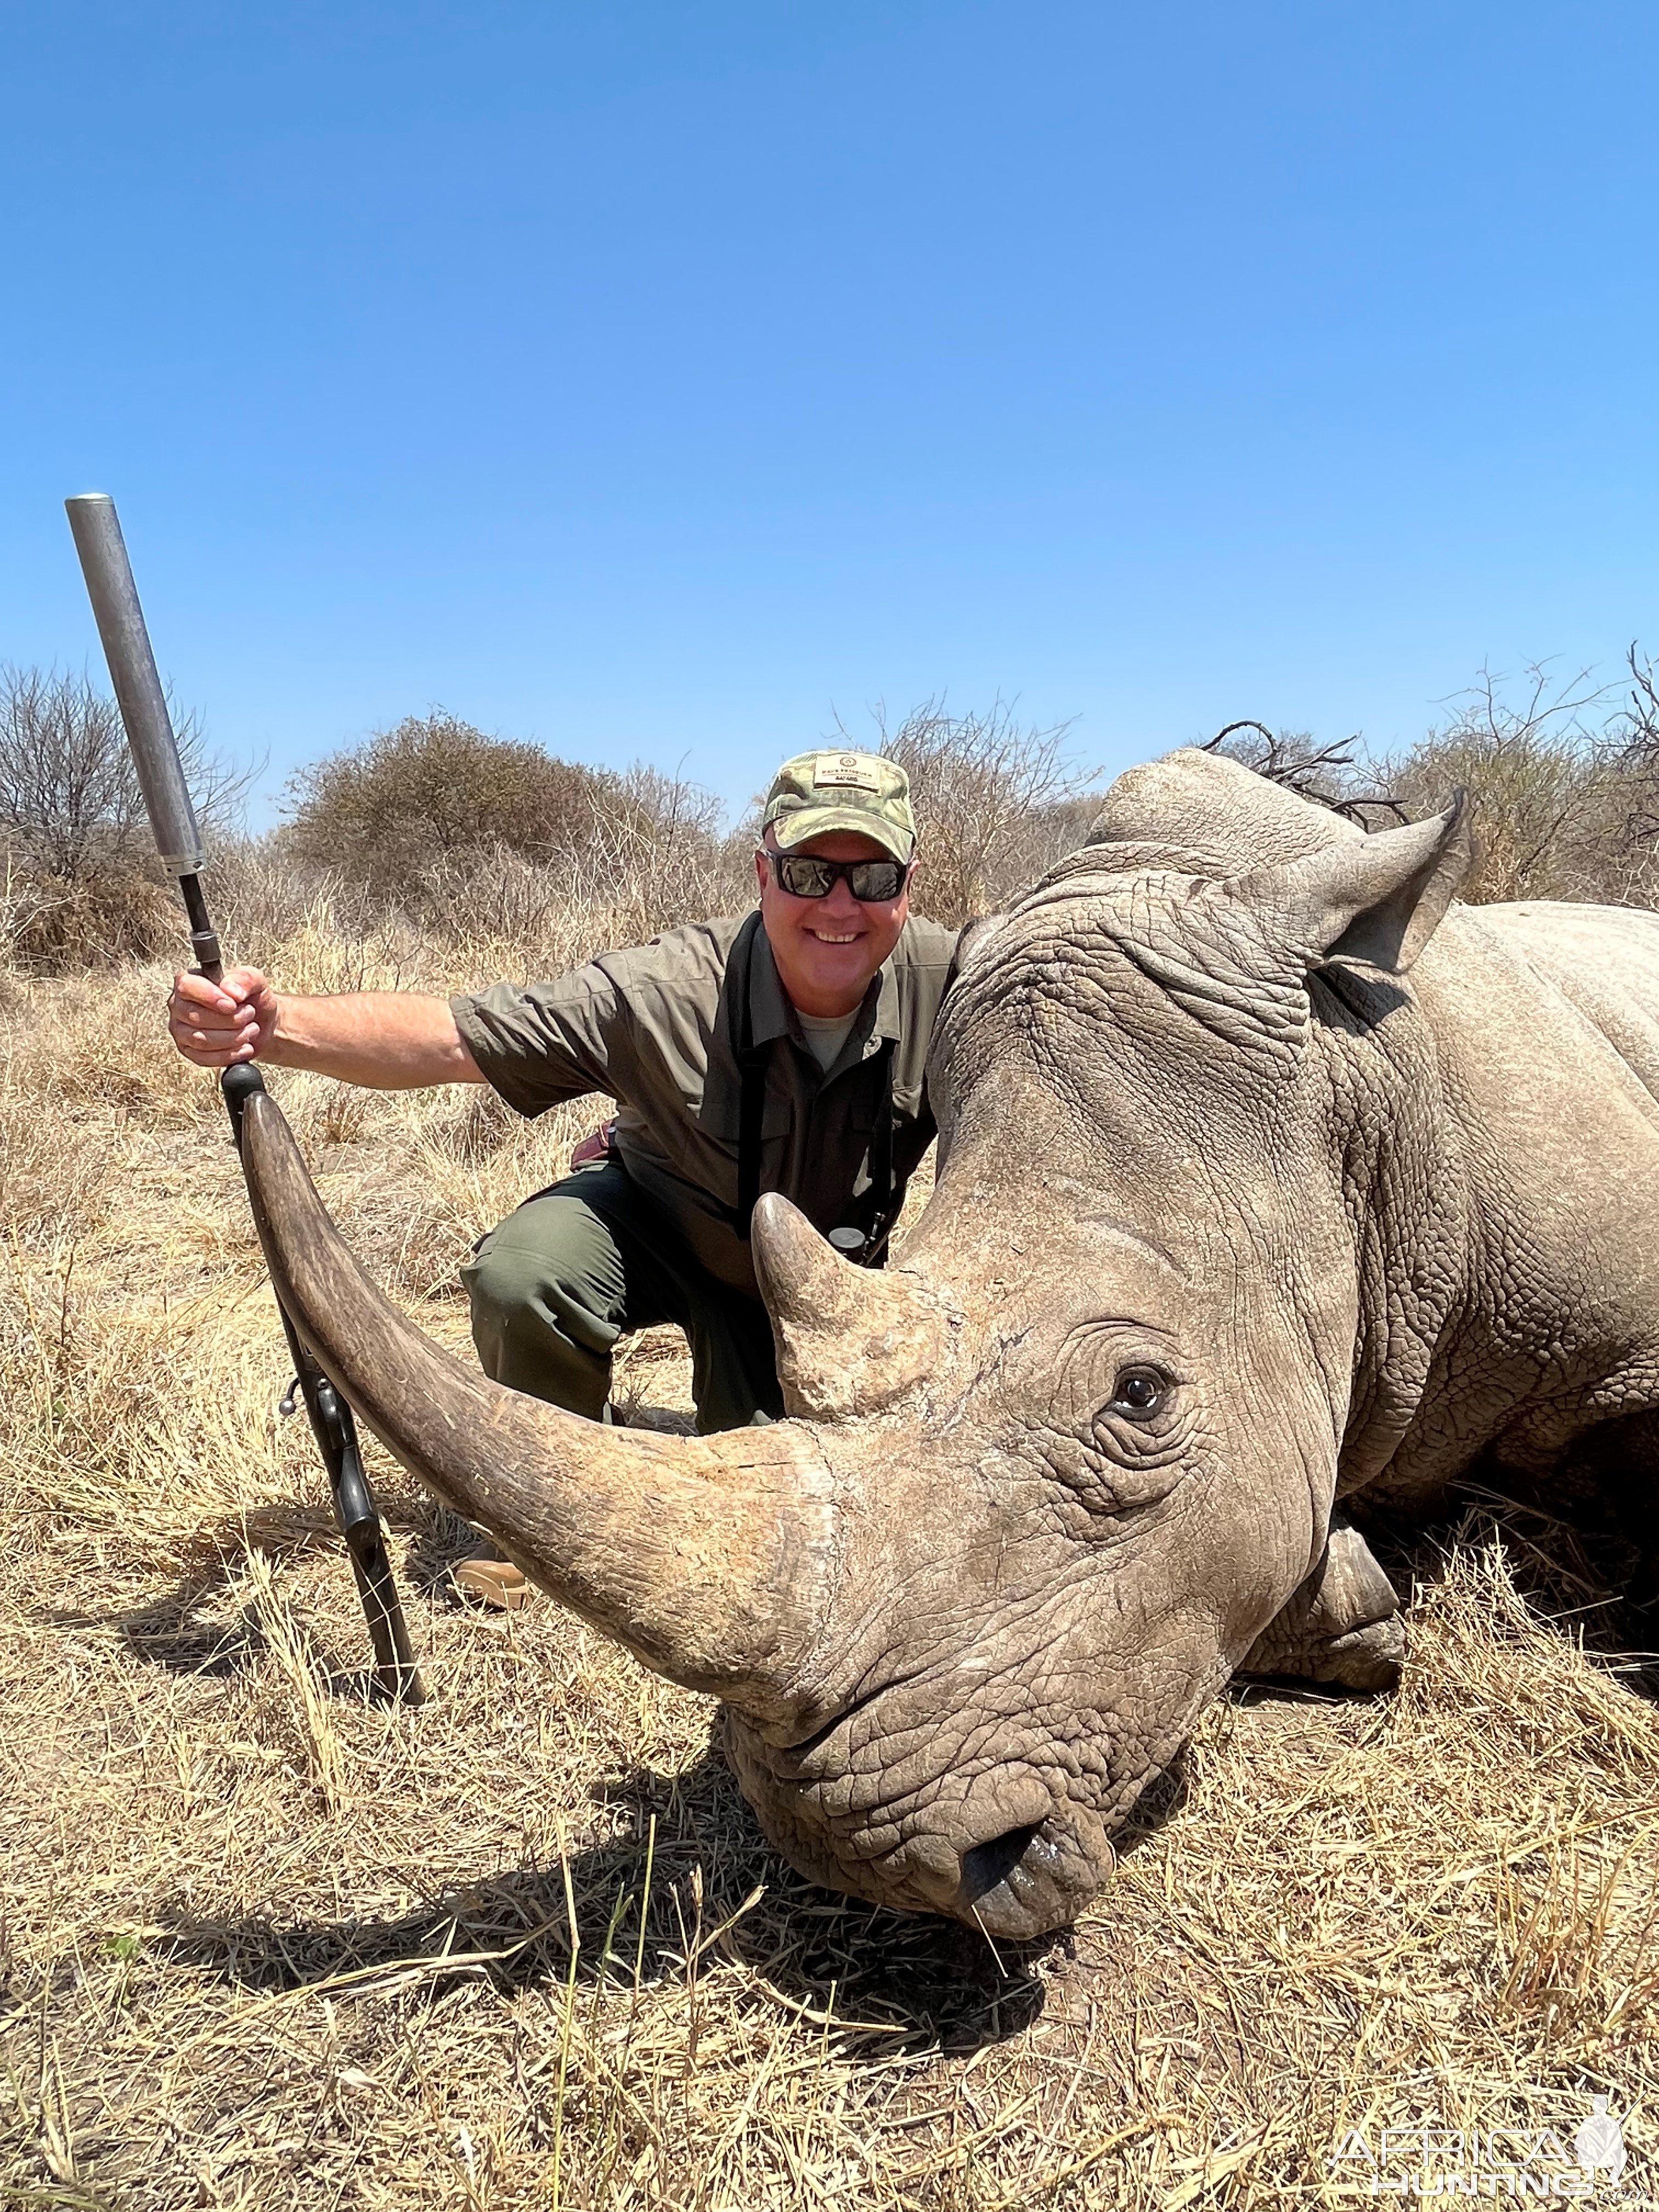 Rhino Vita Darting South Africa